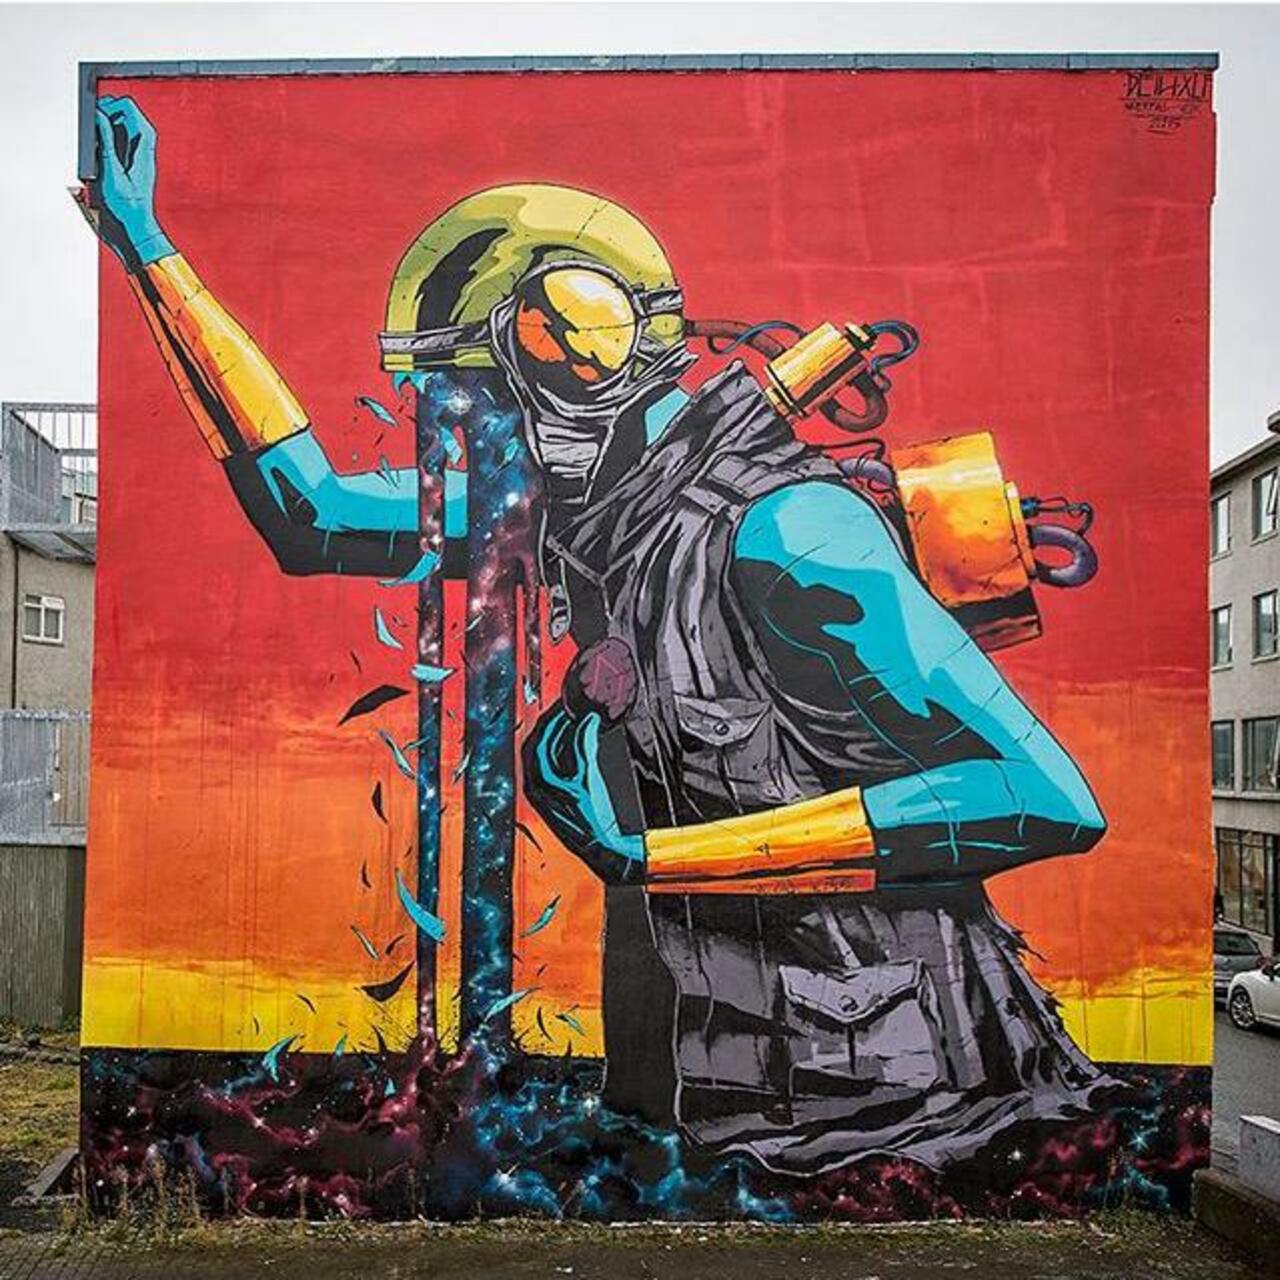 Street Art by Deih in Reykjavik 

#art #graffiti #mural #streetart https://t.co/3m0jIKggfl